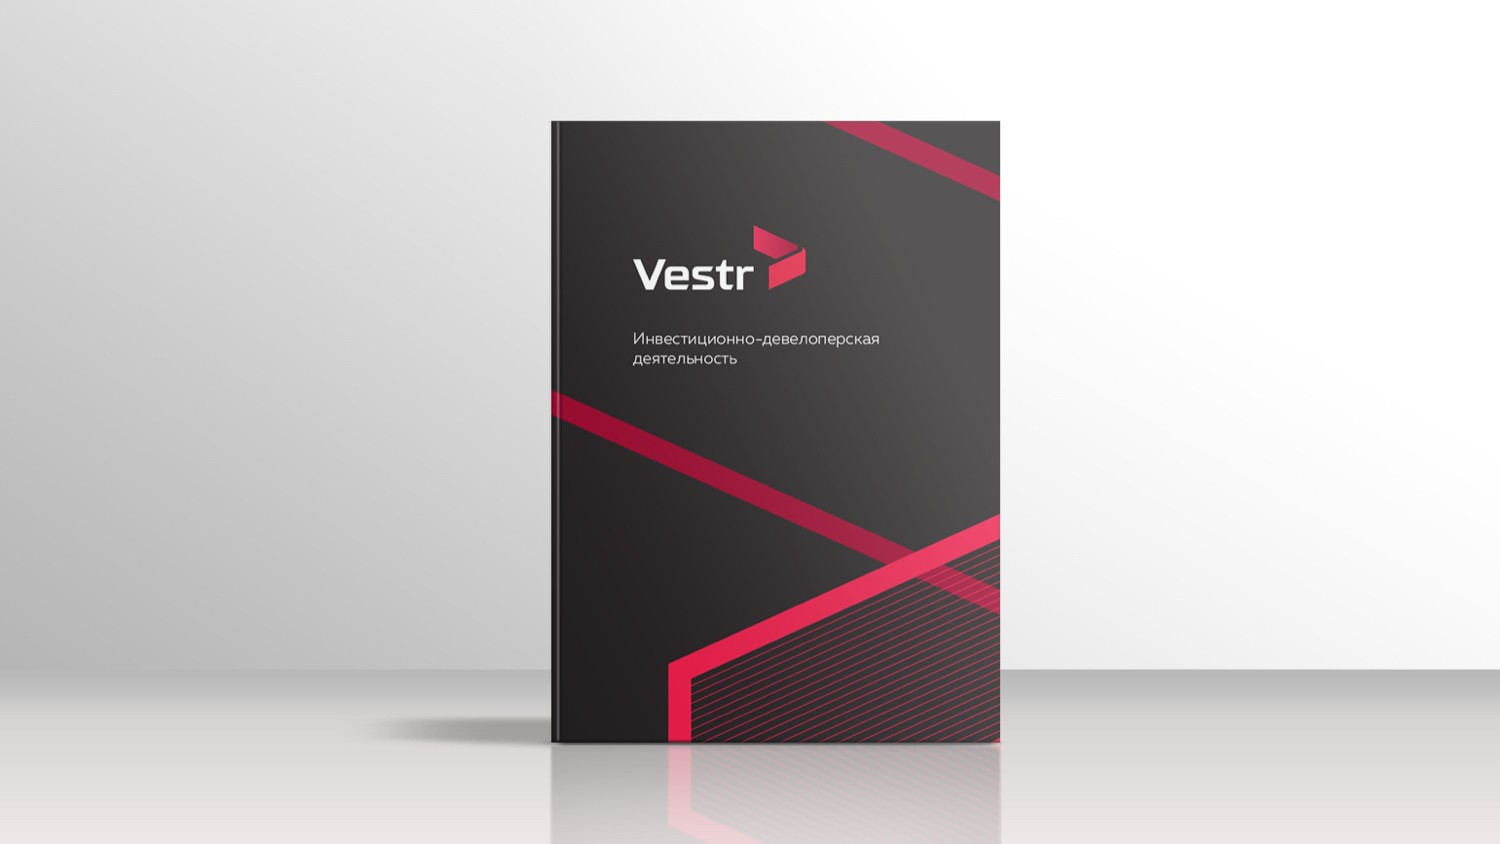 Нейминг и фирменный стиль для инвестиционно-девелоперской компании Vestr